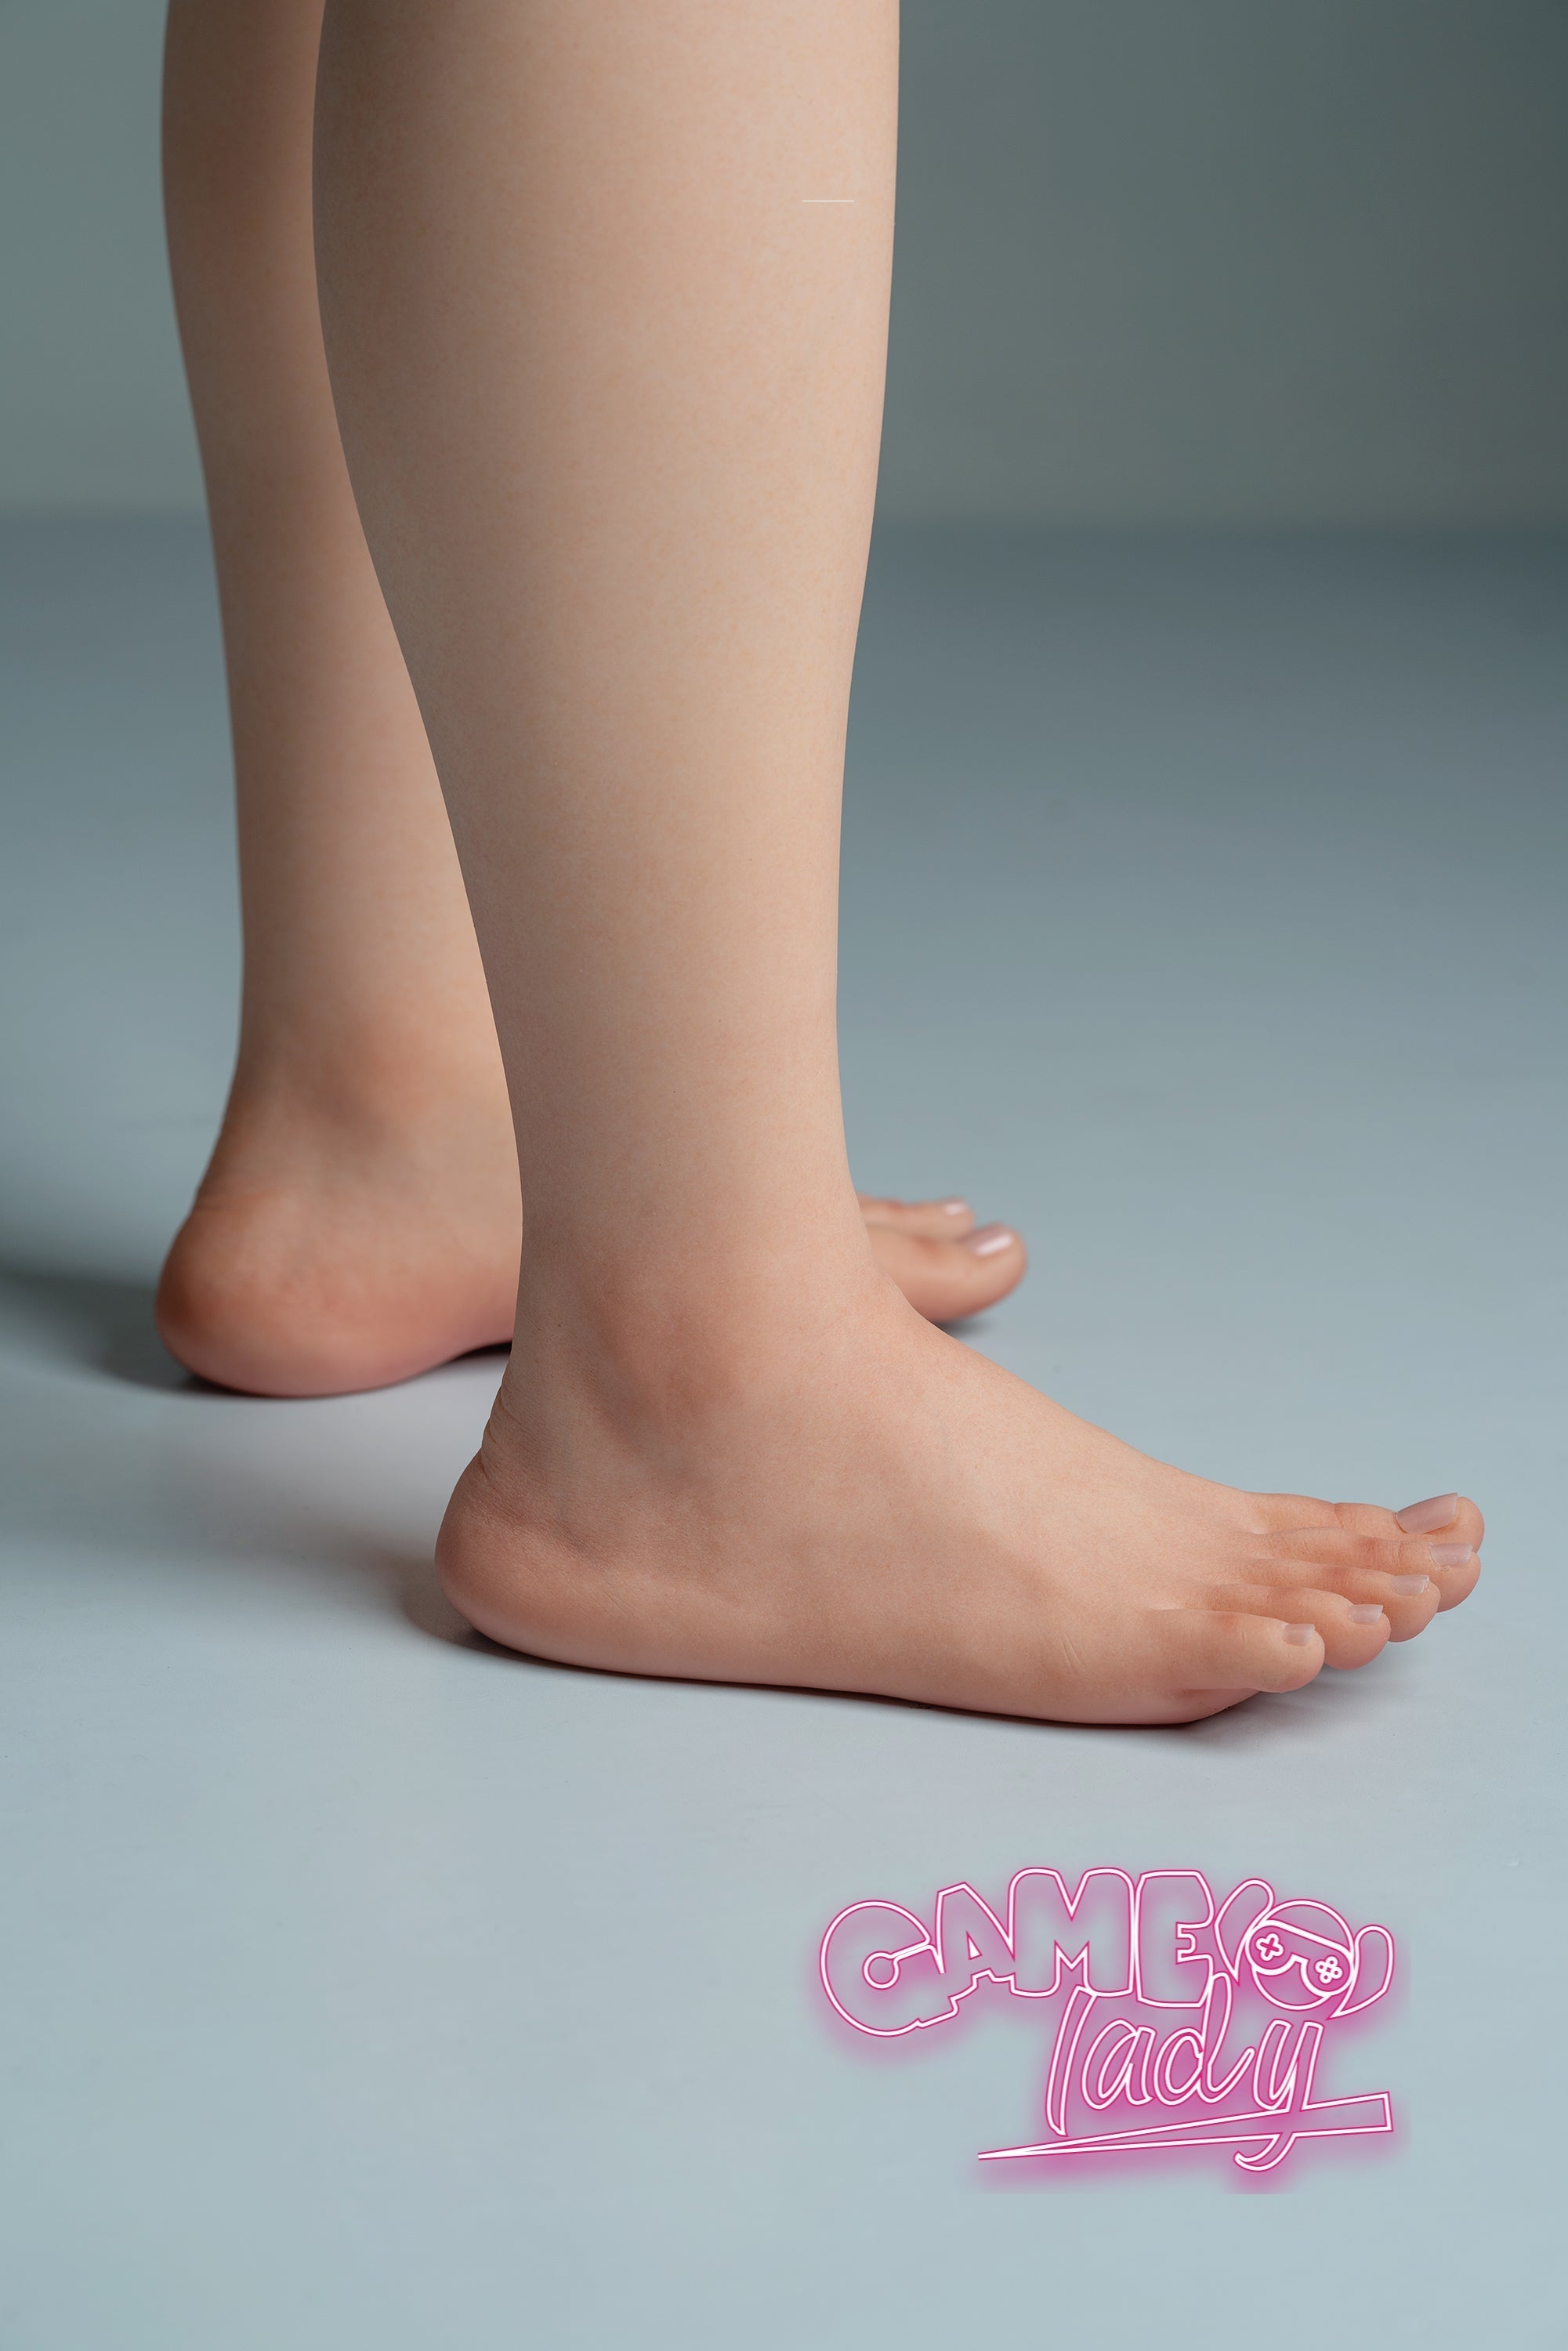 Game Lady 168 cm Silicone - Aerith (CN) | Sex Dolls SG